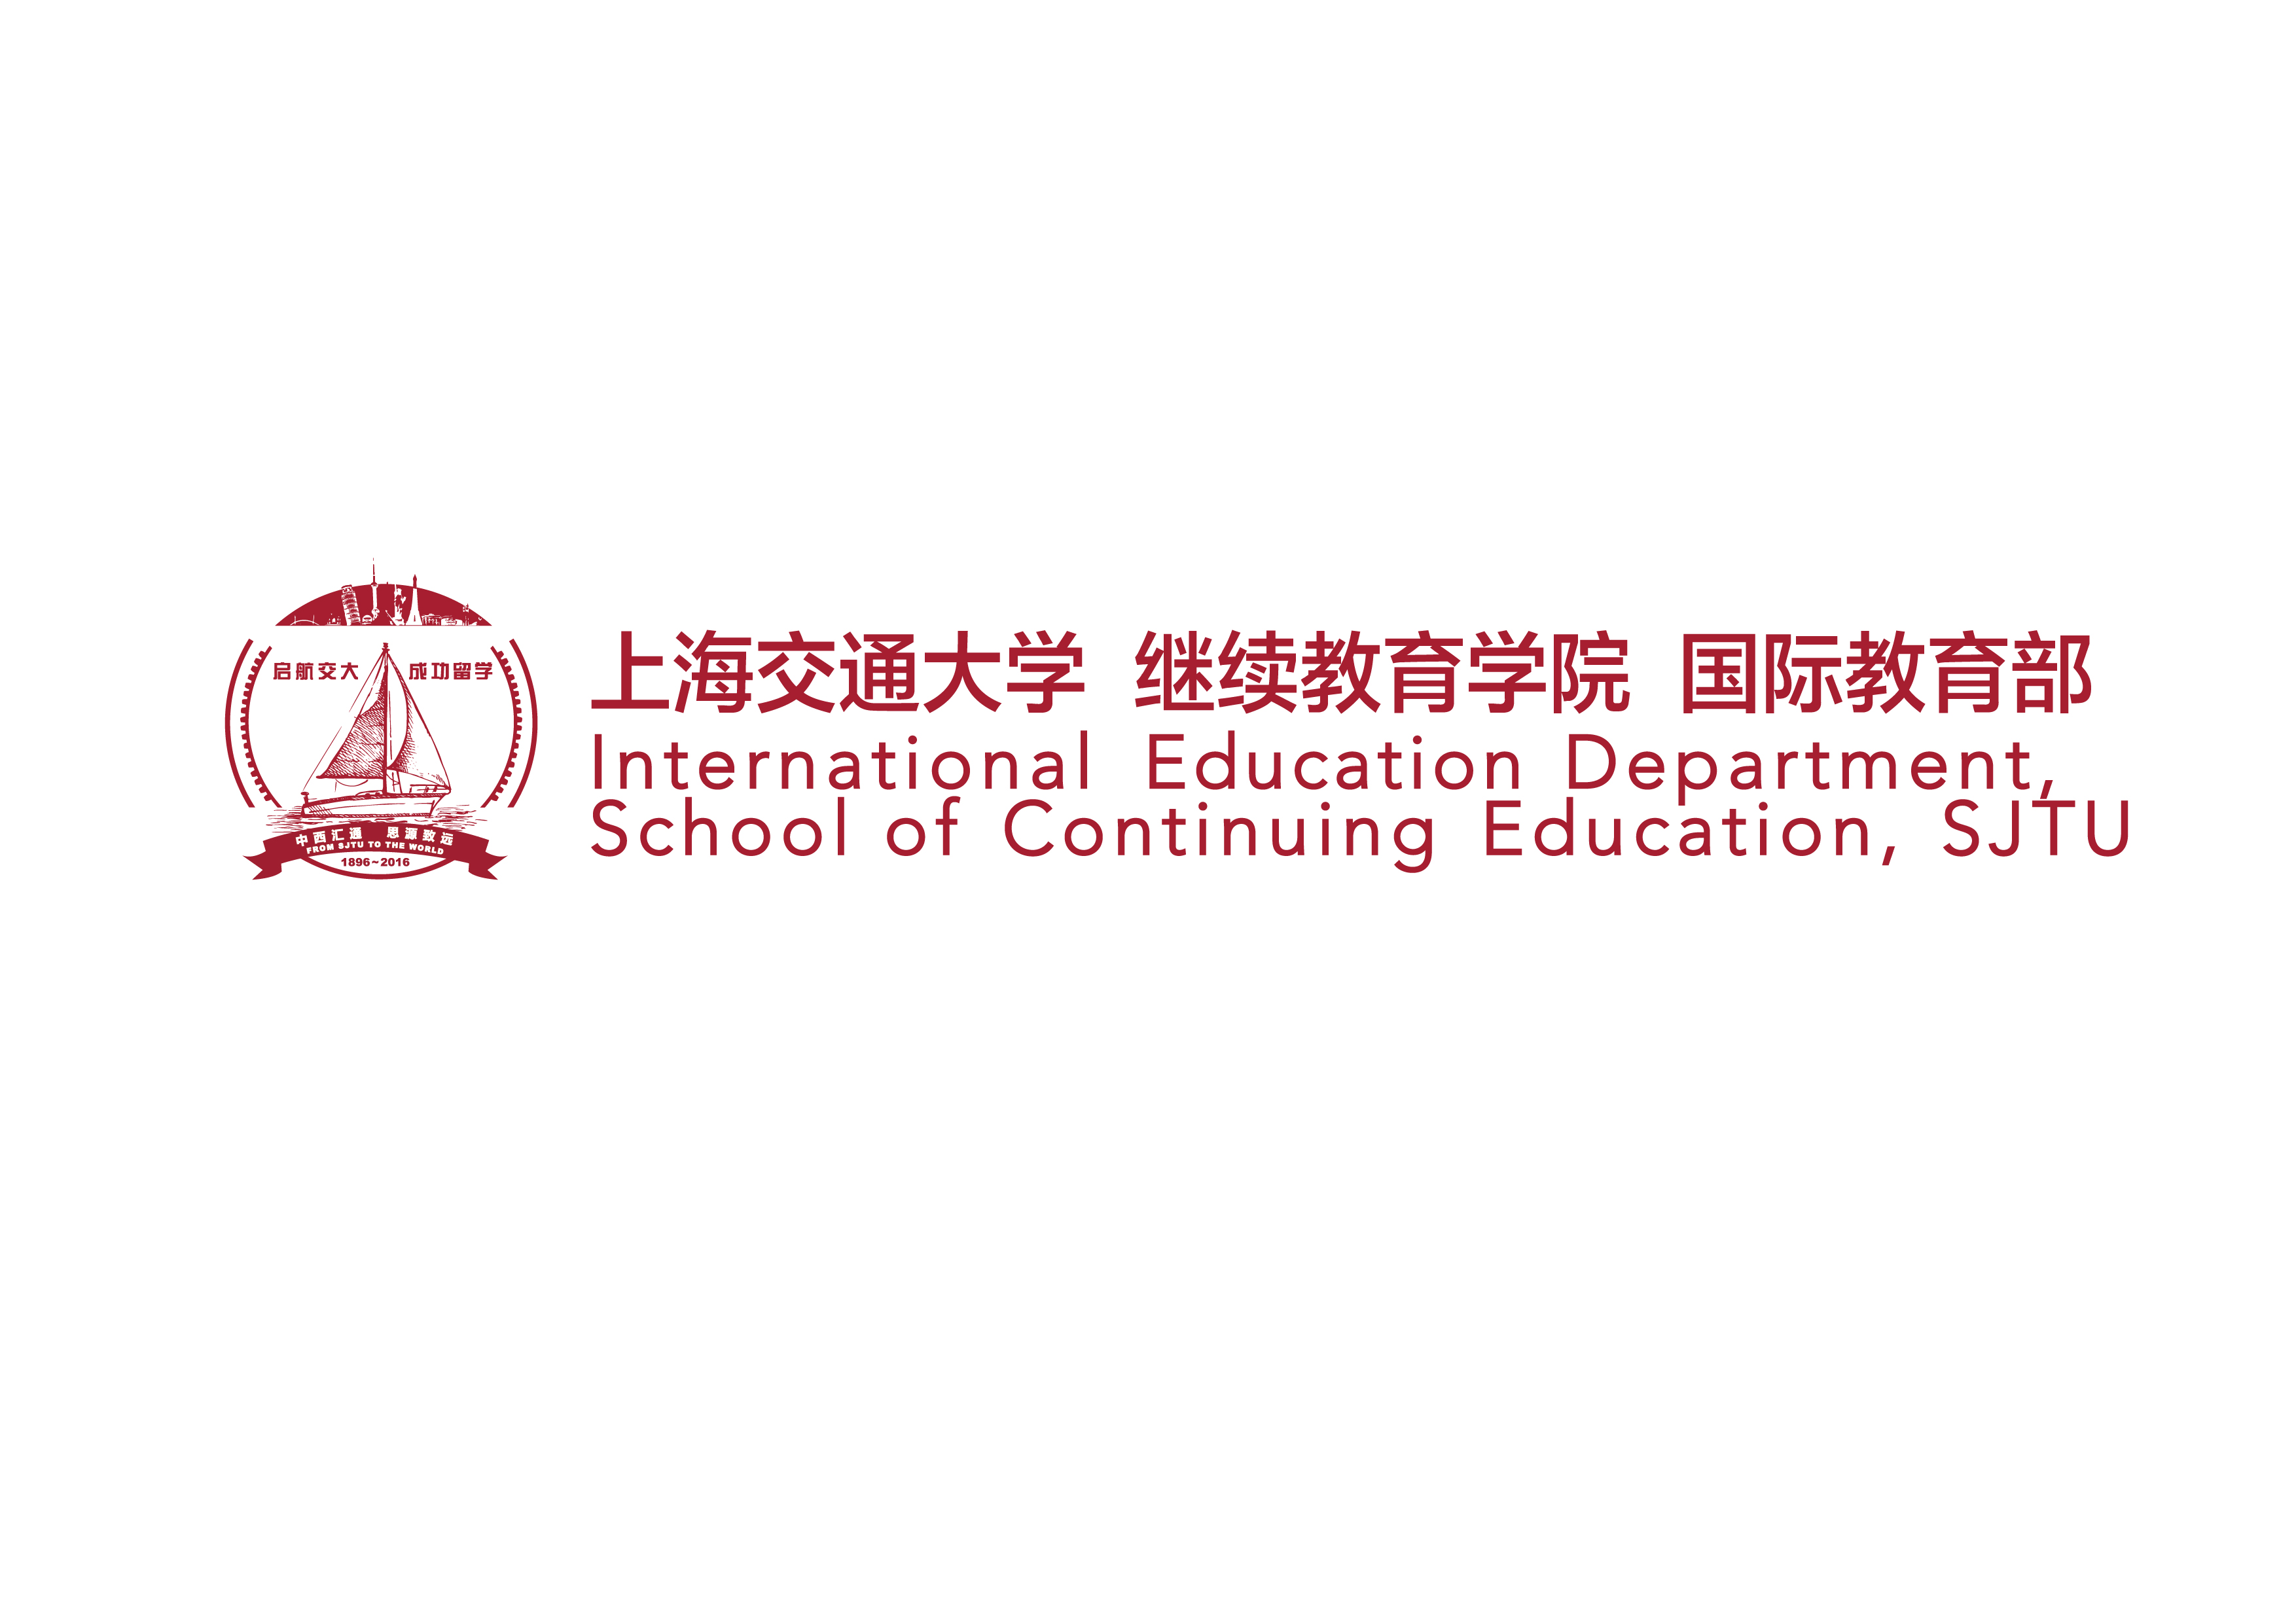 上海交通大學繼續教育學院國際教育部